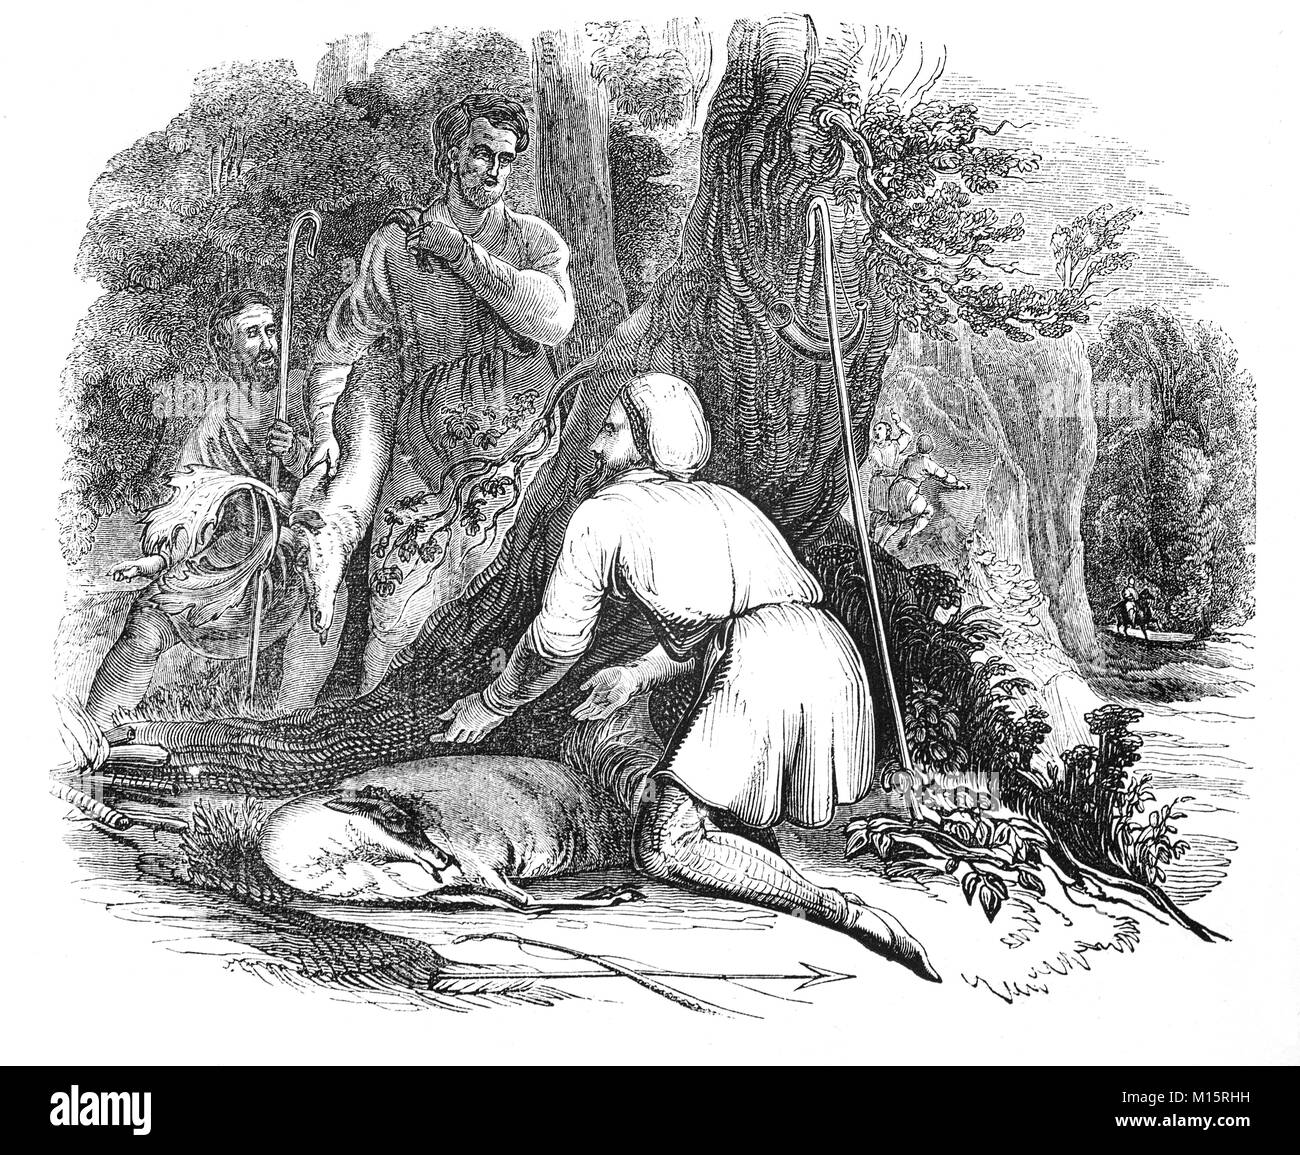 Will Scarlet und ein Buck, getötet, während die Jagd des Königs Rotwild im 14. Jahrhundert Sherwood Forest, in Nottinghamshire, England. Stockfoto